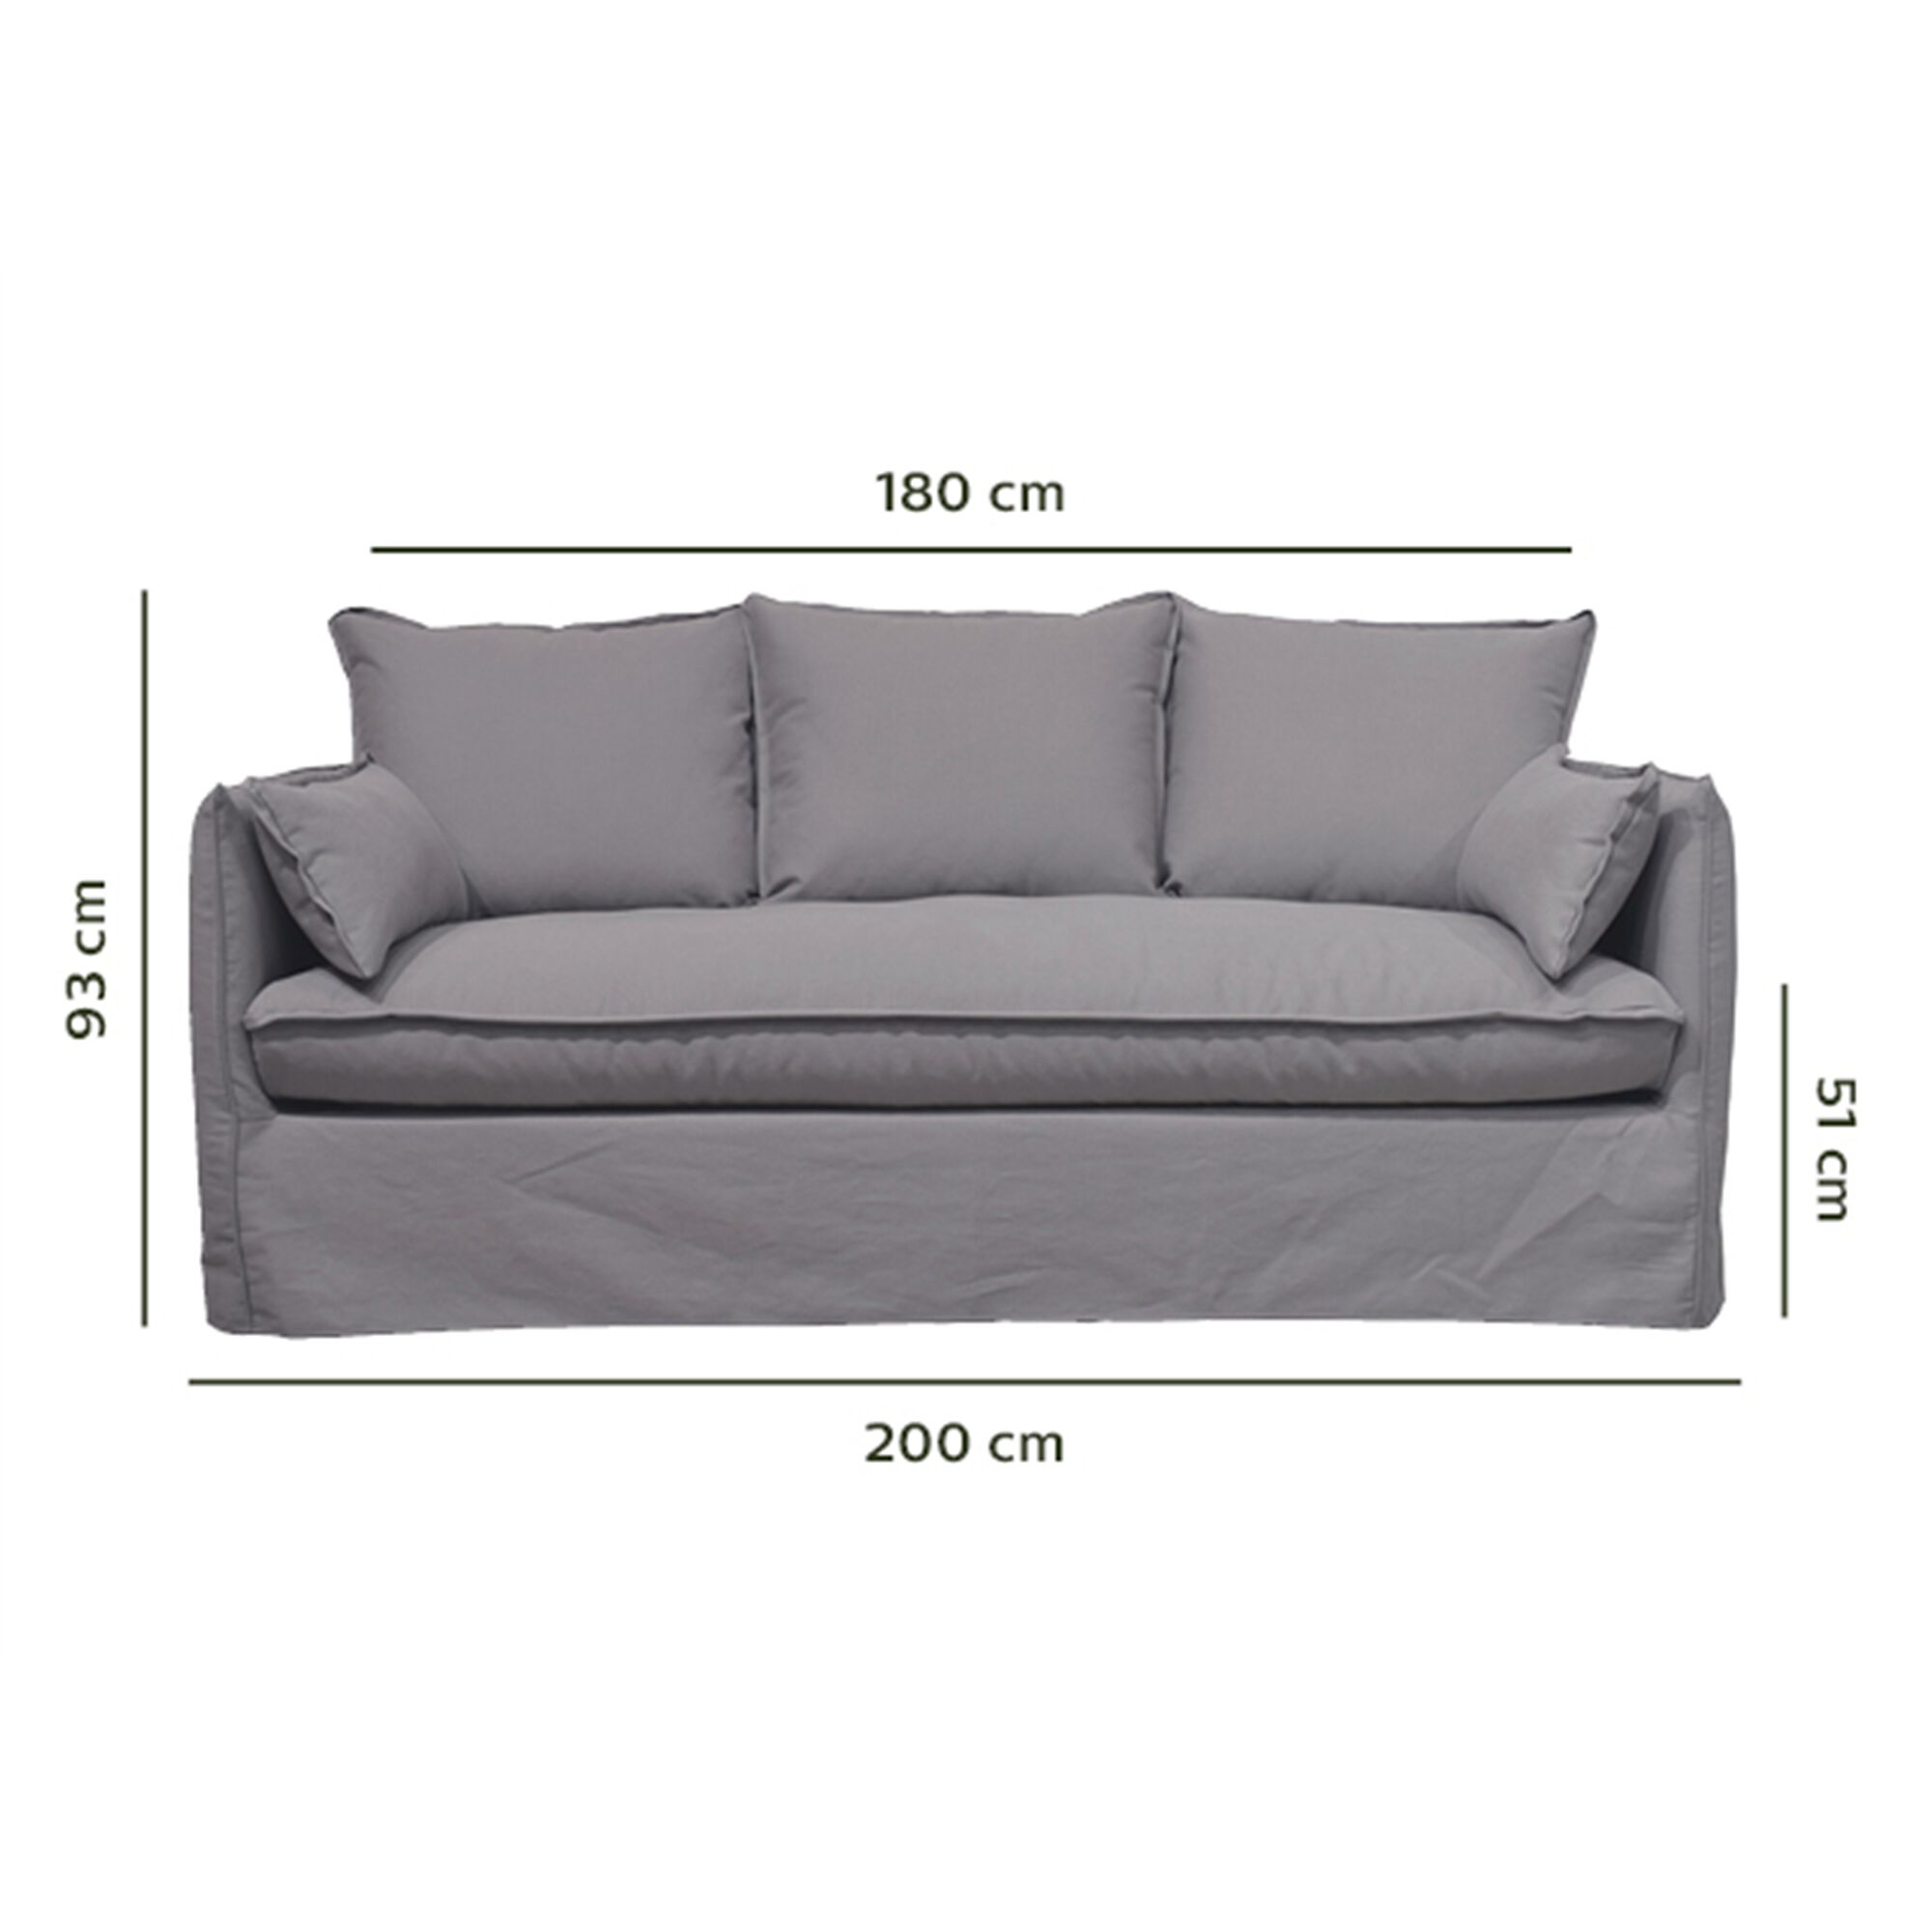 Canapé 4 places fixe en coton et lin - gris borie-KALISTO